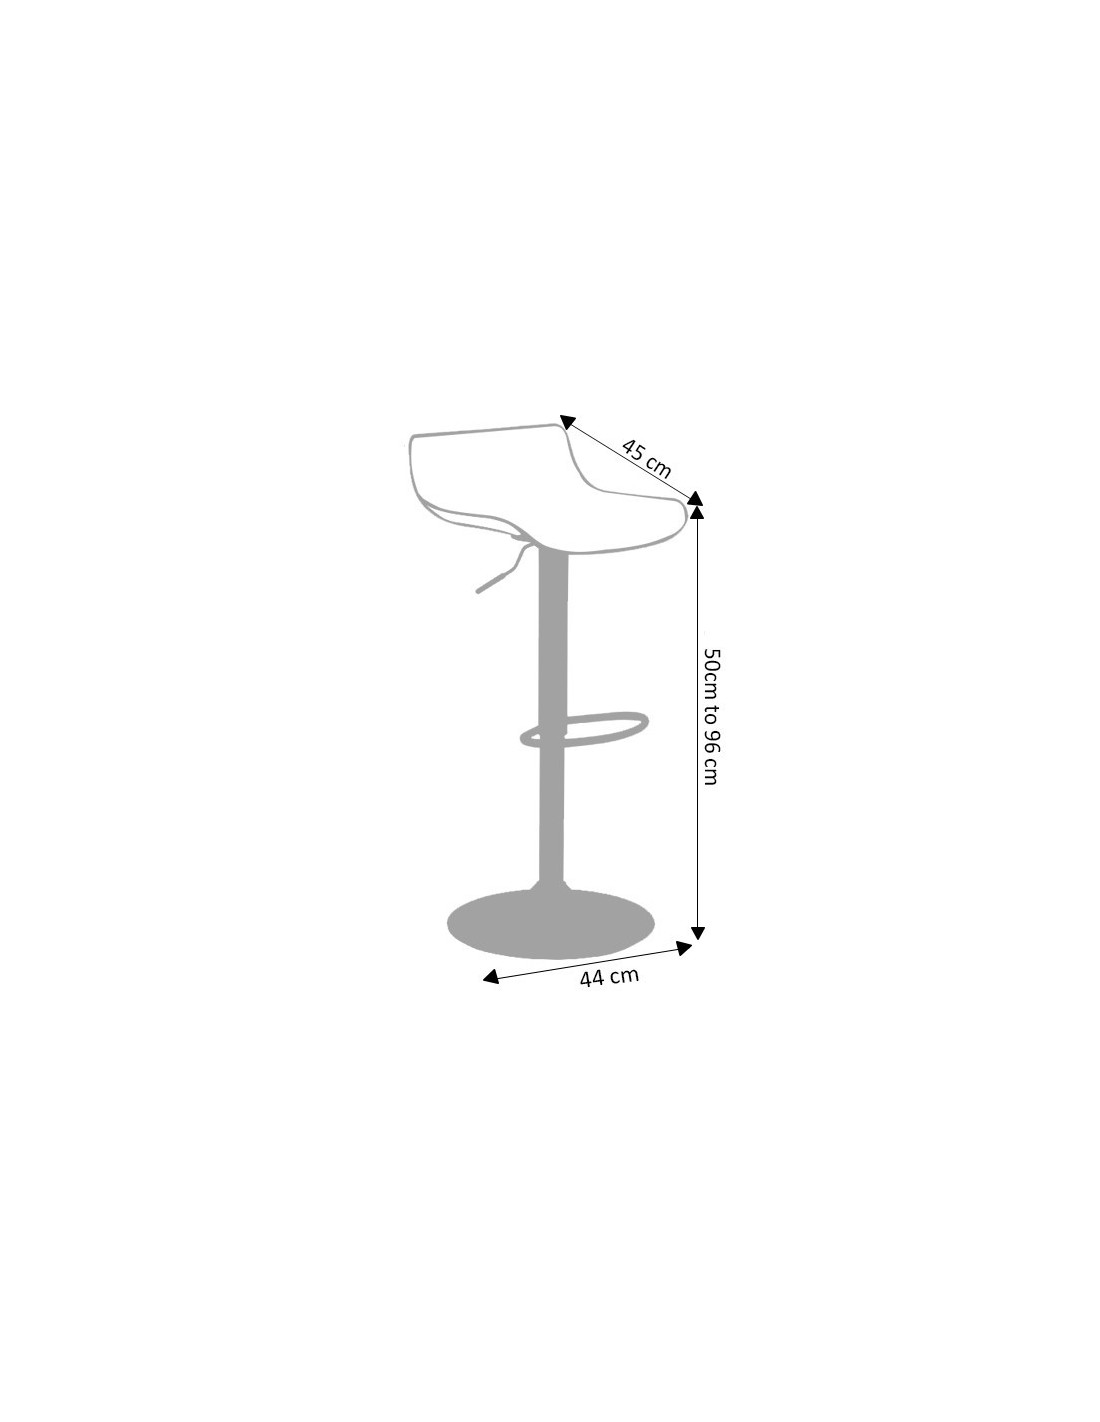 Swivel Kitchen Bar Stool Adjustable Height, What Is The Height Of A Kitchen Bar Stool